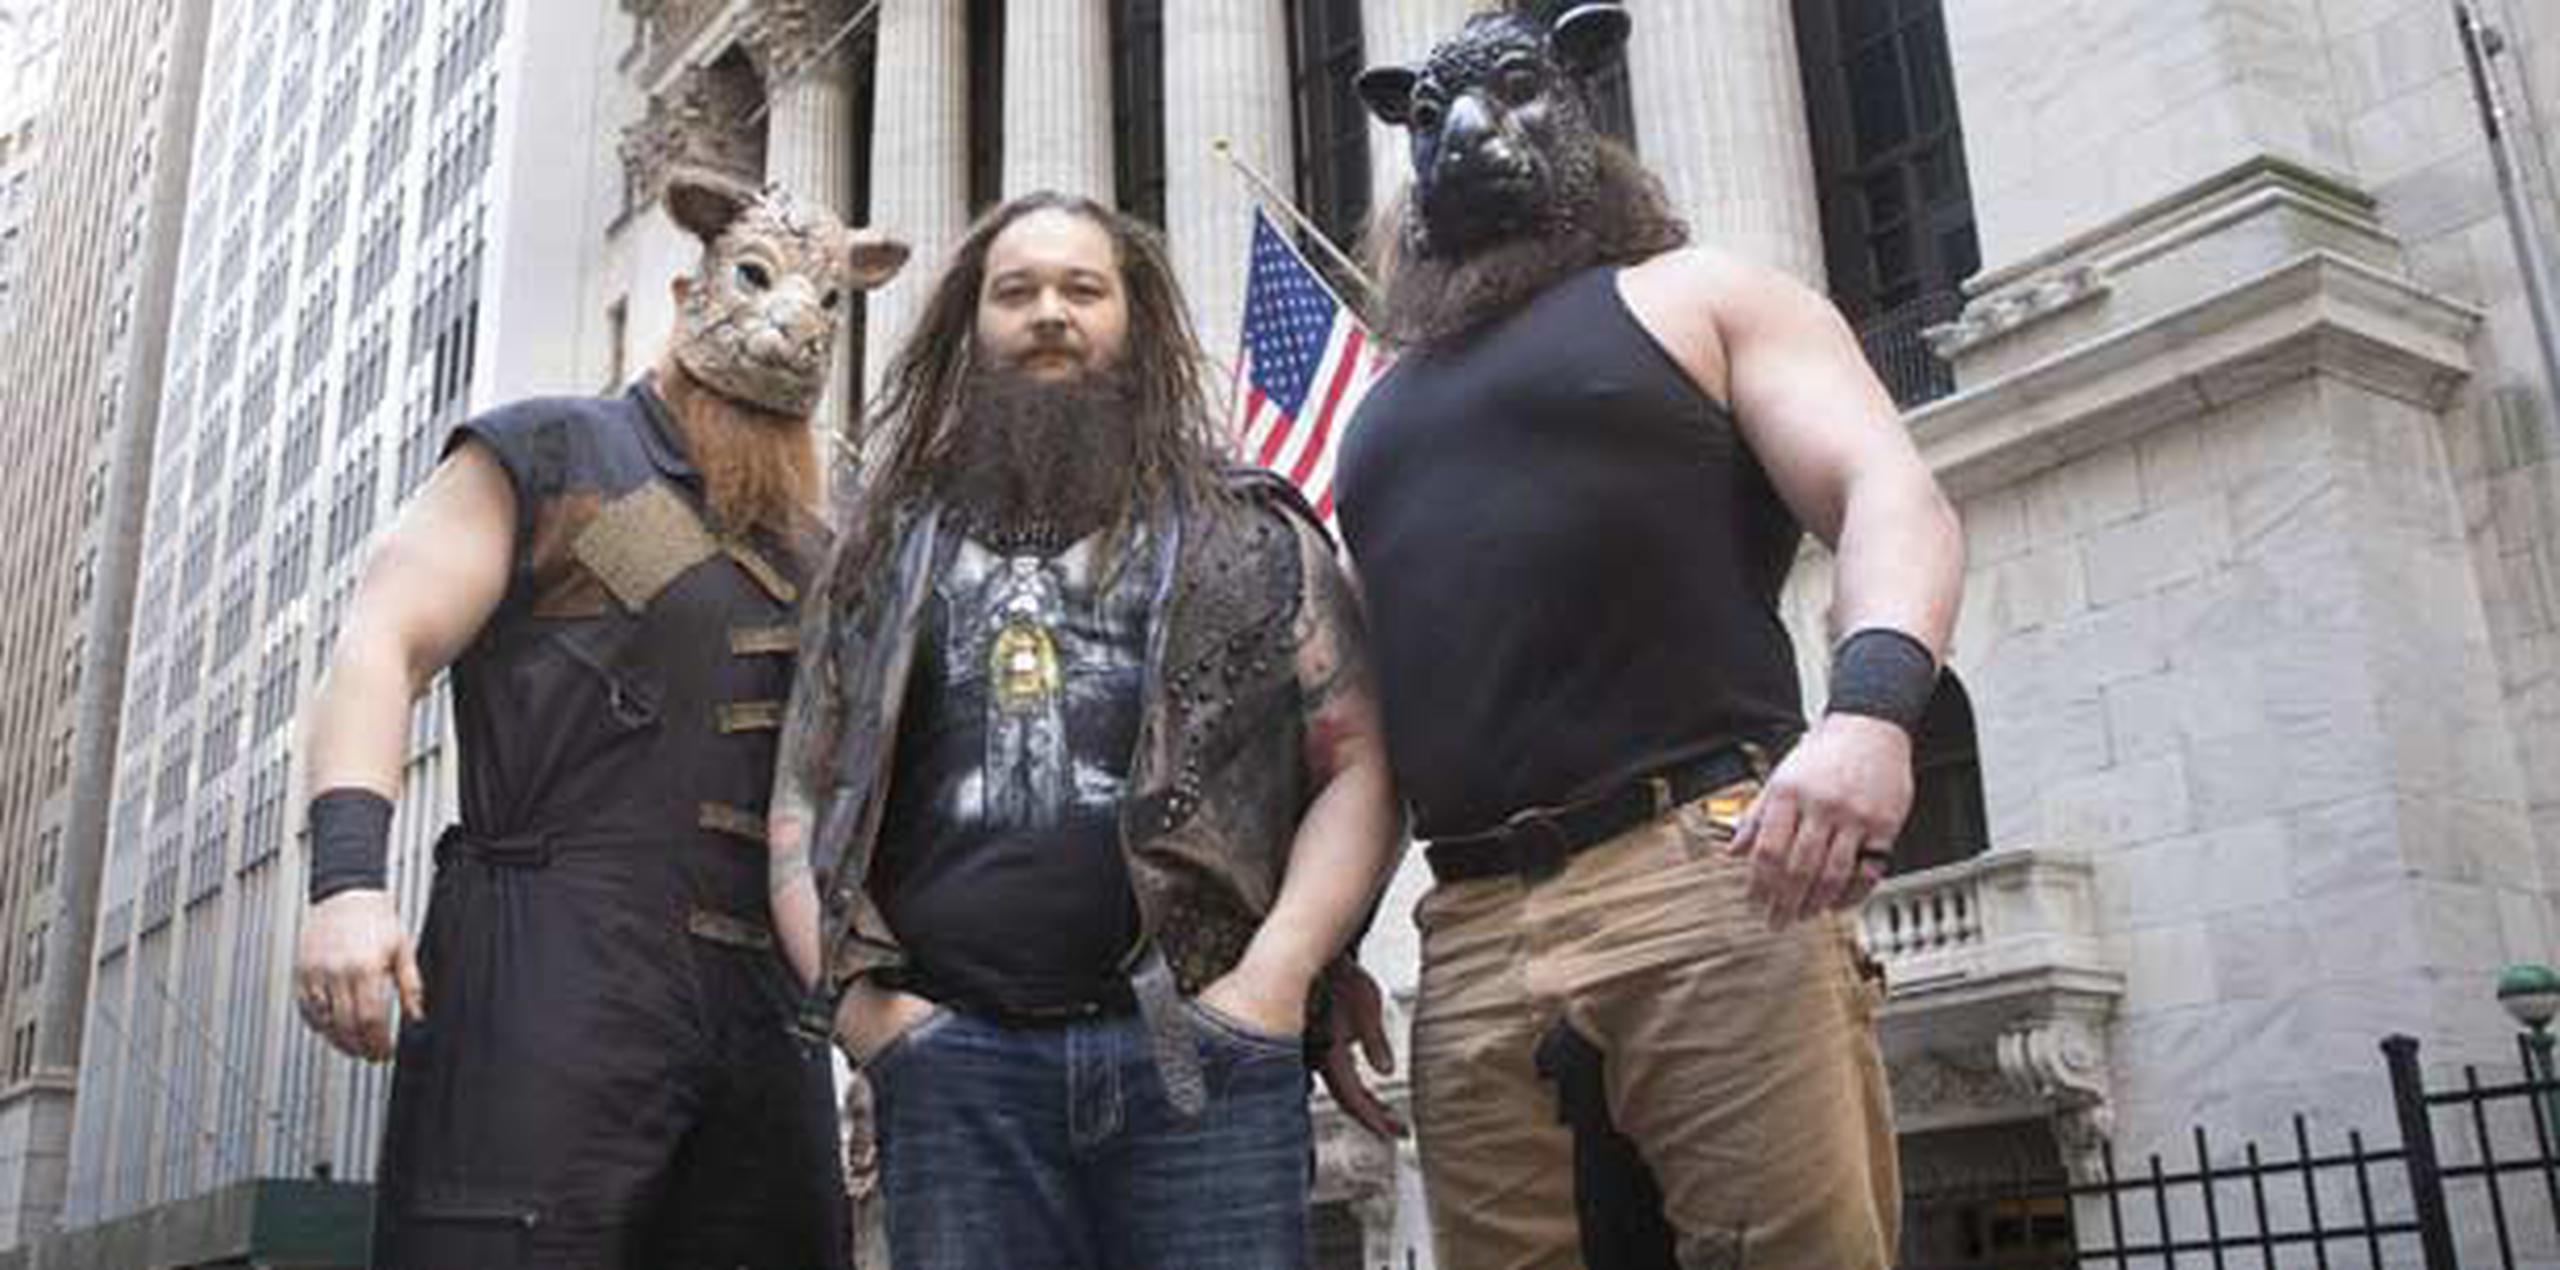 Los luchadores Erick Rowan, Bray Wyatt, y Braun Strowman posan frente a la sede de la Bolsa en Nueva York. (EFE)